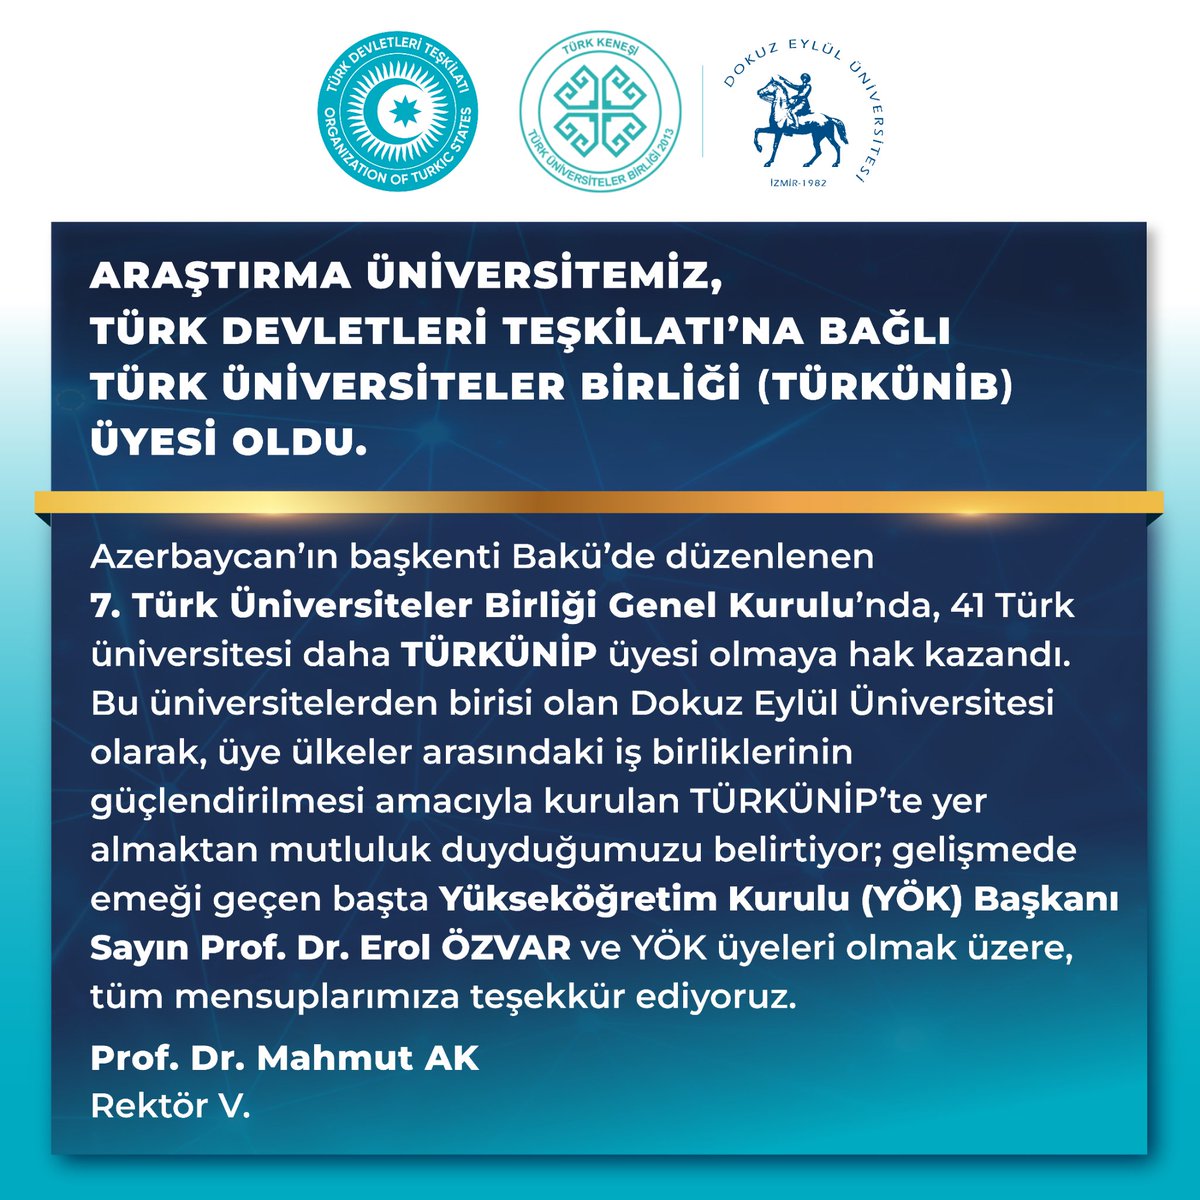 #universitemDEU, Türk Devletleri Teşkilatı'na bağlı Türk Üniversiteler Birliği (TÜRKÜNİB) üyesi oldu. Bakü'de düzenlenen 7. Türk Üniversiteler Birliği Genel Kurulu'nda, 41 Türk üniversitesi daha TÜRKÜNİP üyesi olmaya hak kazandı. Bu üniversitelerden birisi olan #DEÜ olarak, üye